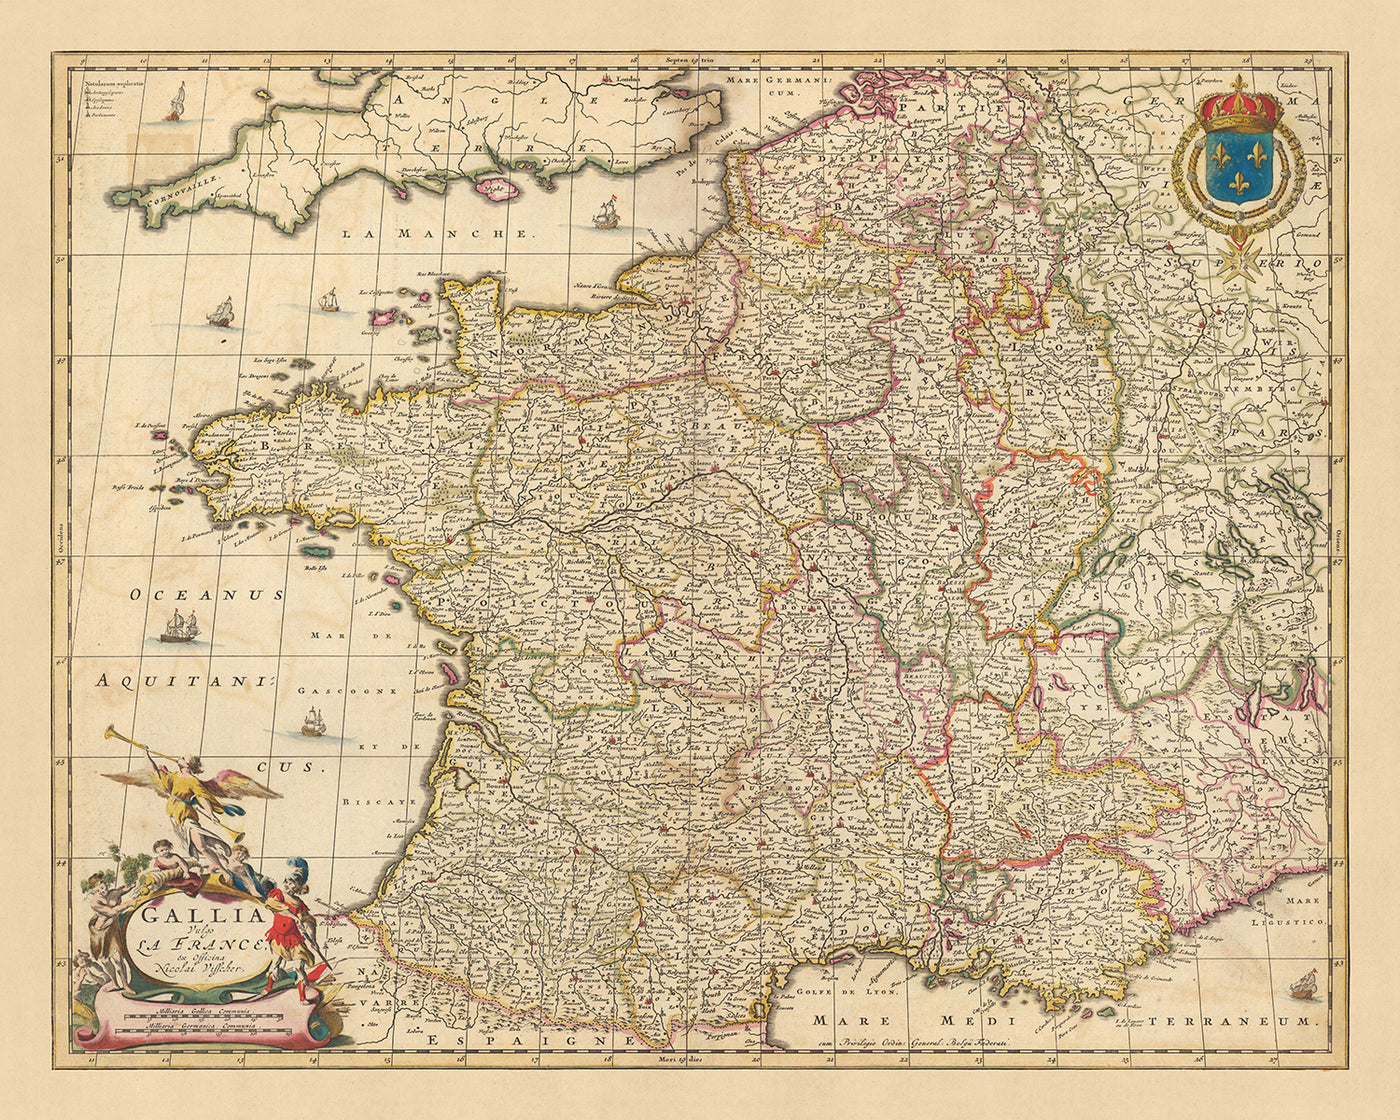 Mapa antiguo de Francia: 'Gallia Vulgo' de Visscher, 1690: París, Bruselas, provincias y regiones de Francia, Riviera Francesa